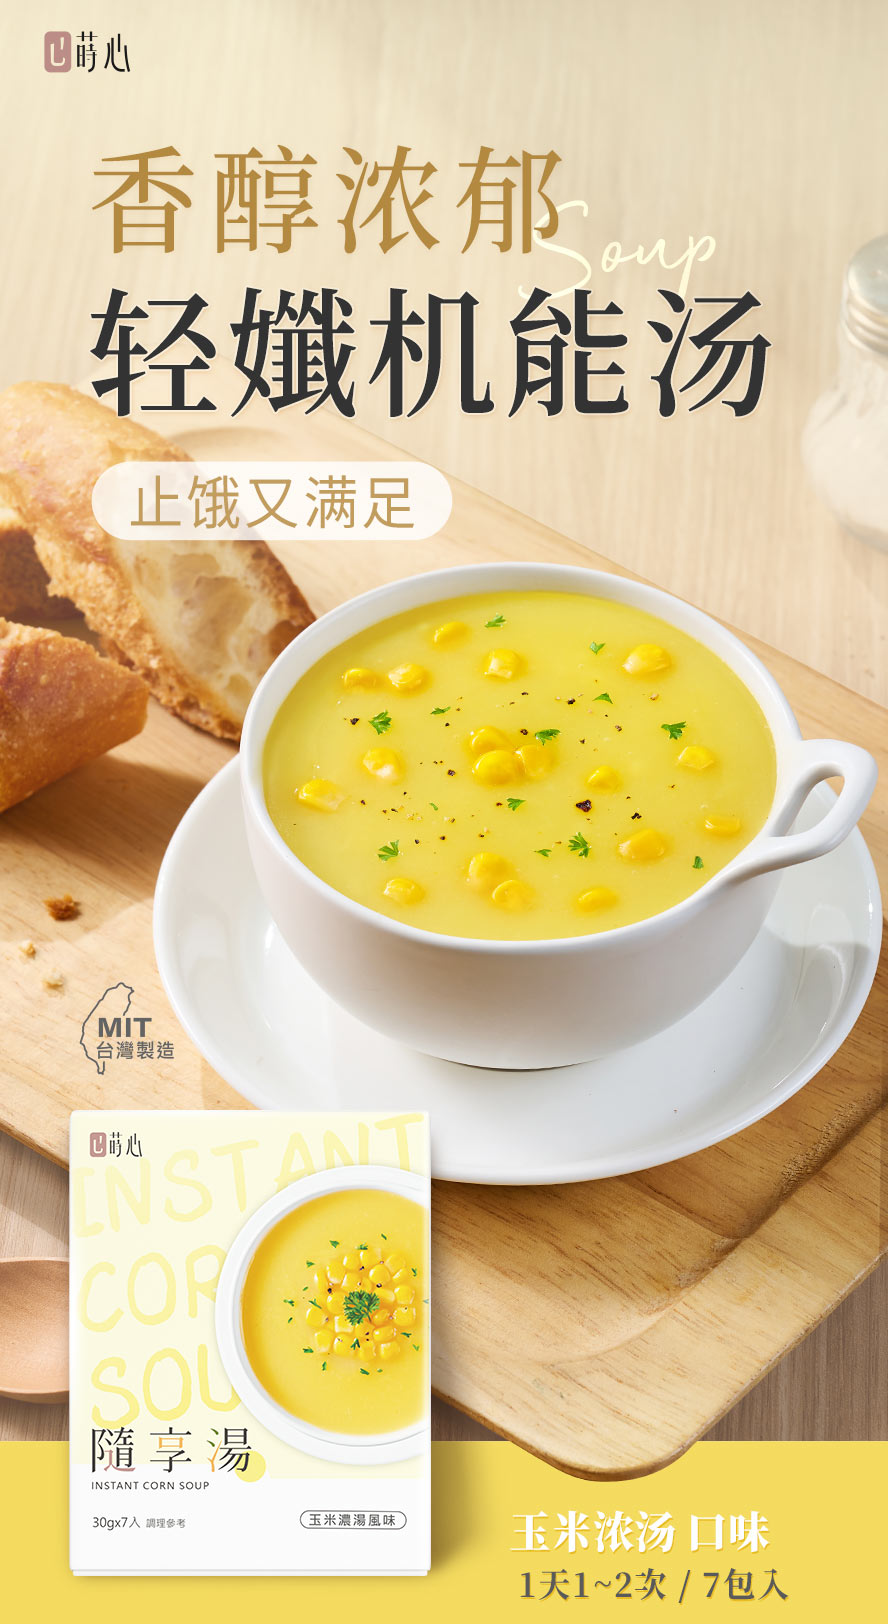 莳心随享汤玉米浓汤口味介绍。